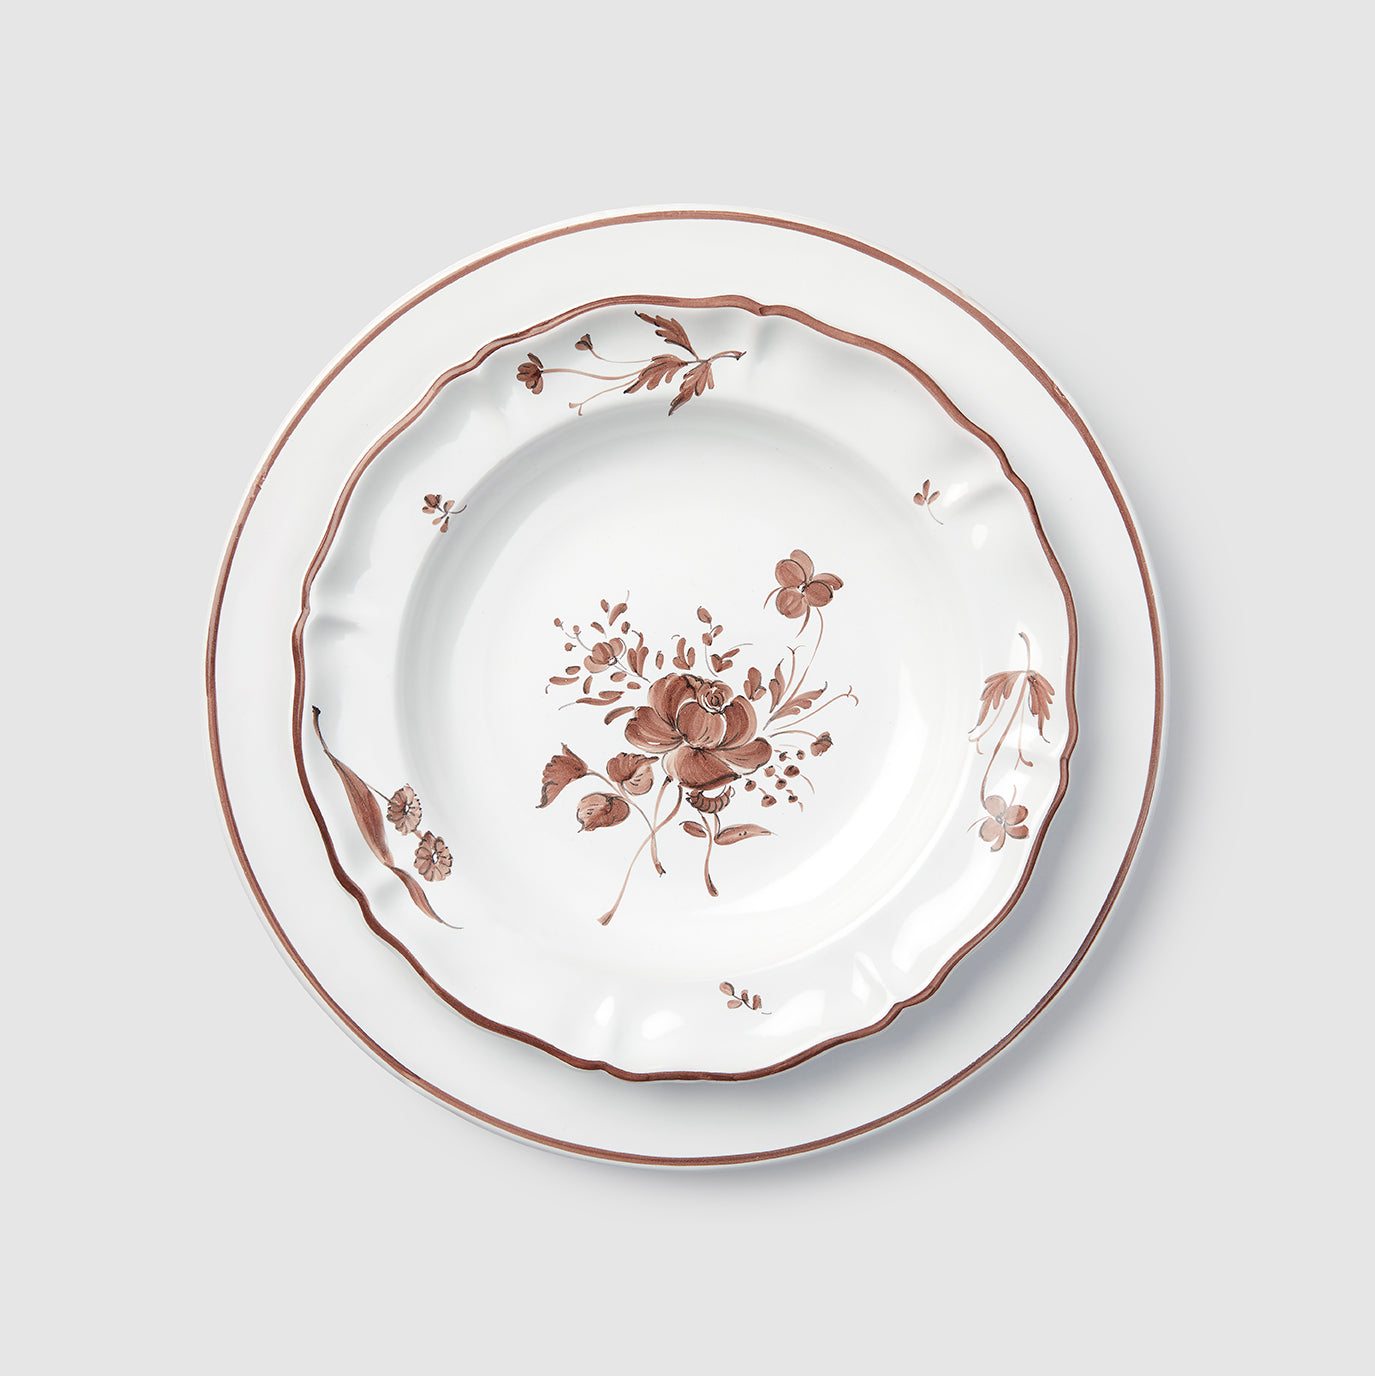 L'Horizon Dinner Plate and Camaieu Soup Plate, Chocolat